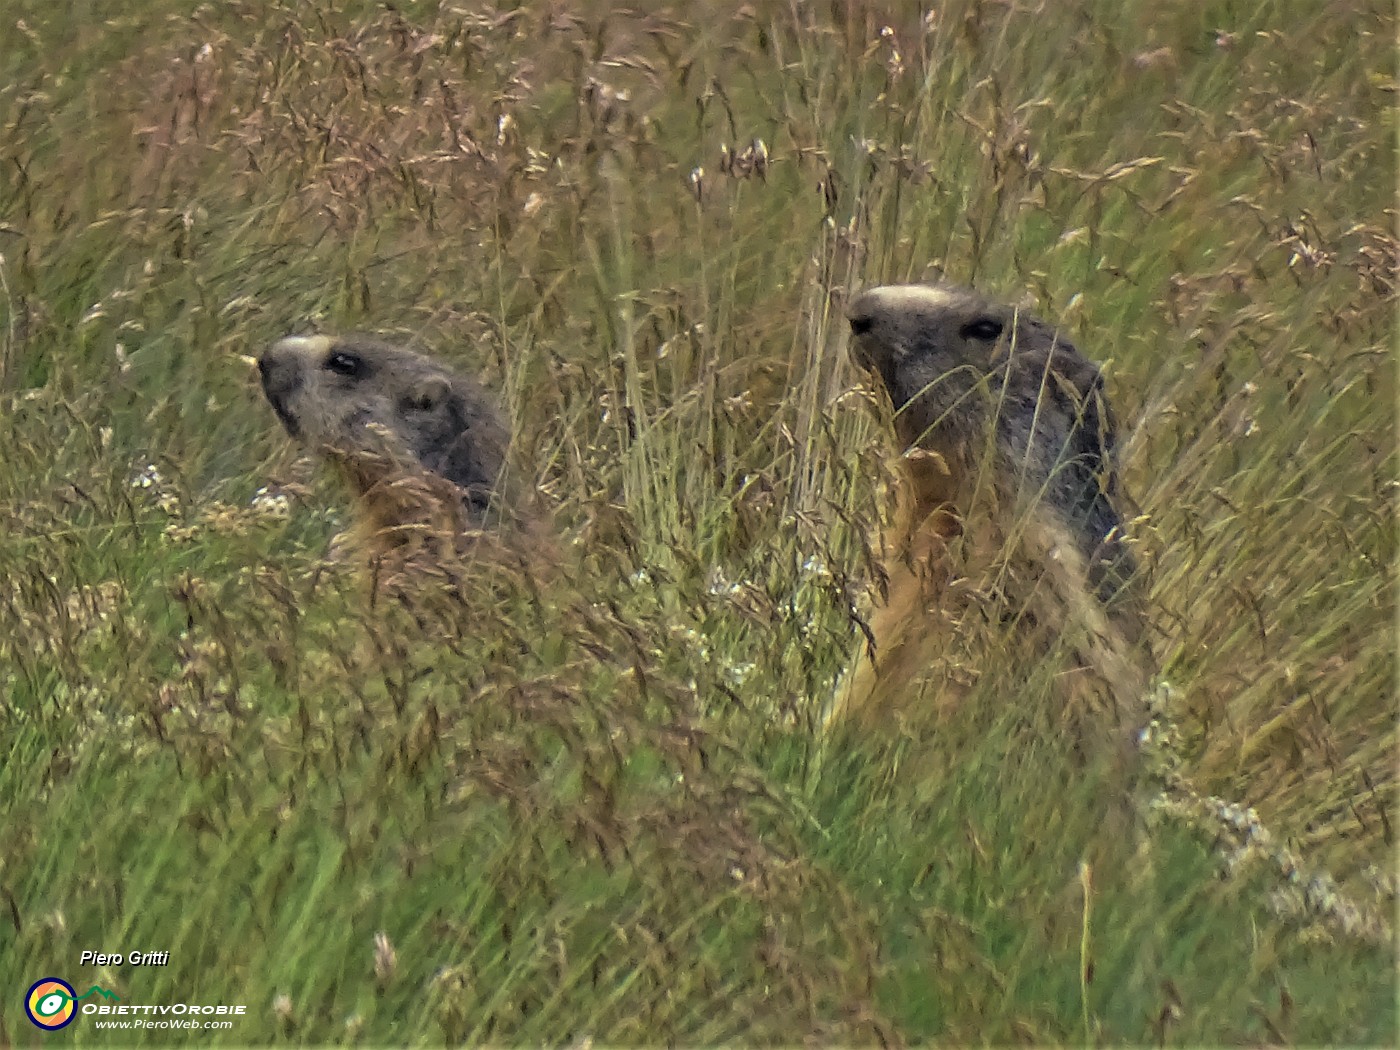 20 Marmotte in sentinella osservano tra l'erba.JPG